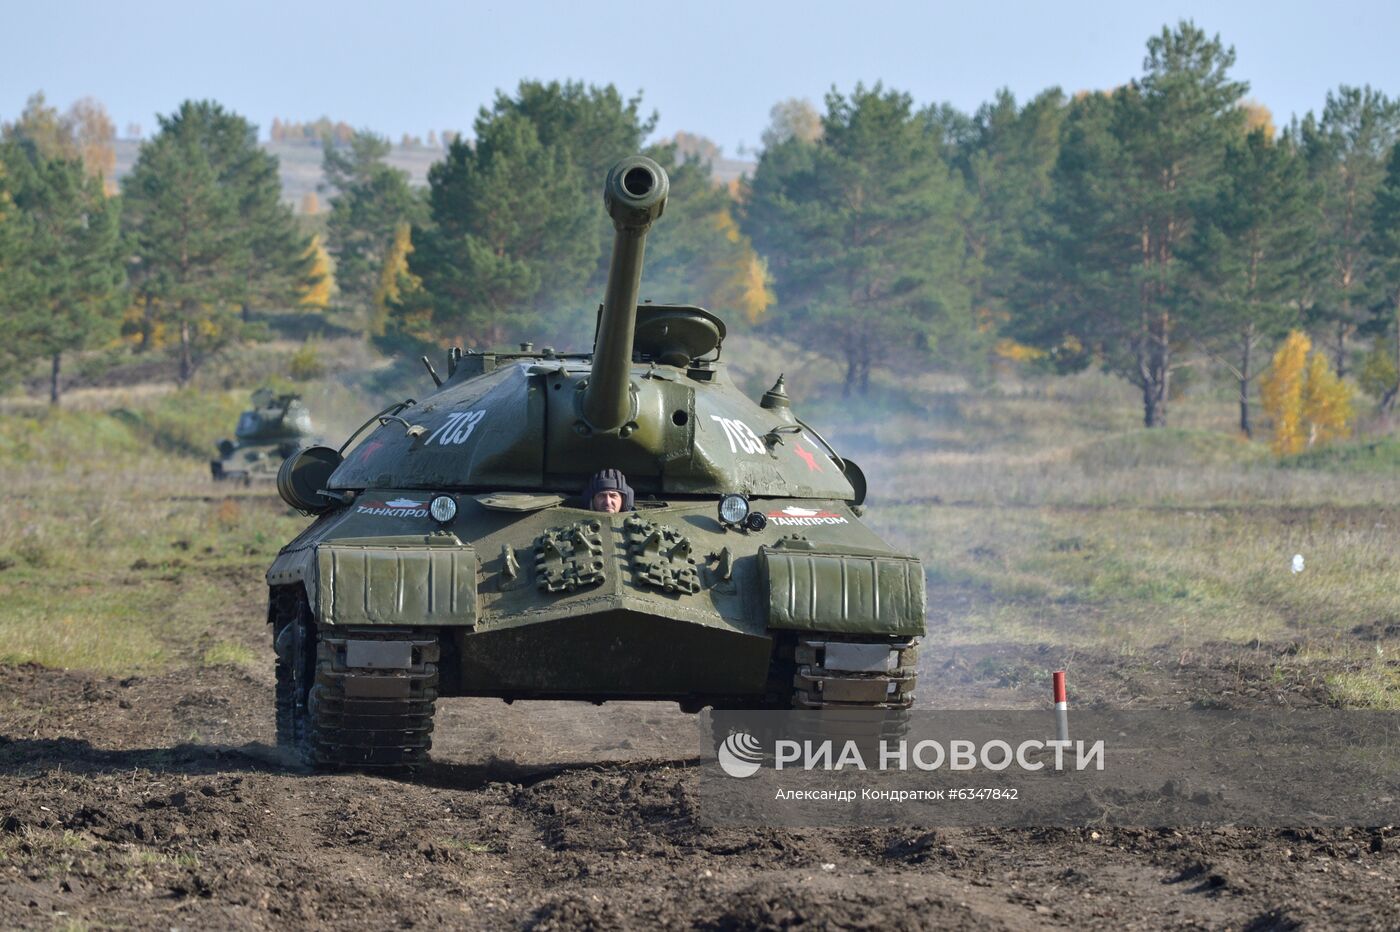 Уральский танковый фестиваль в Челябинской области